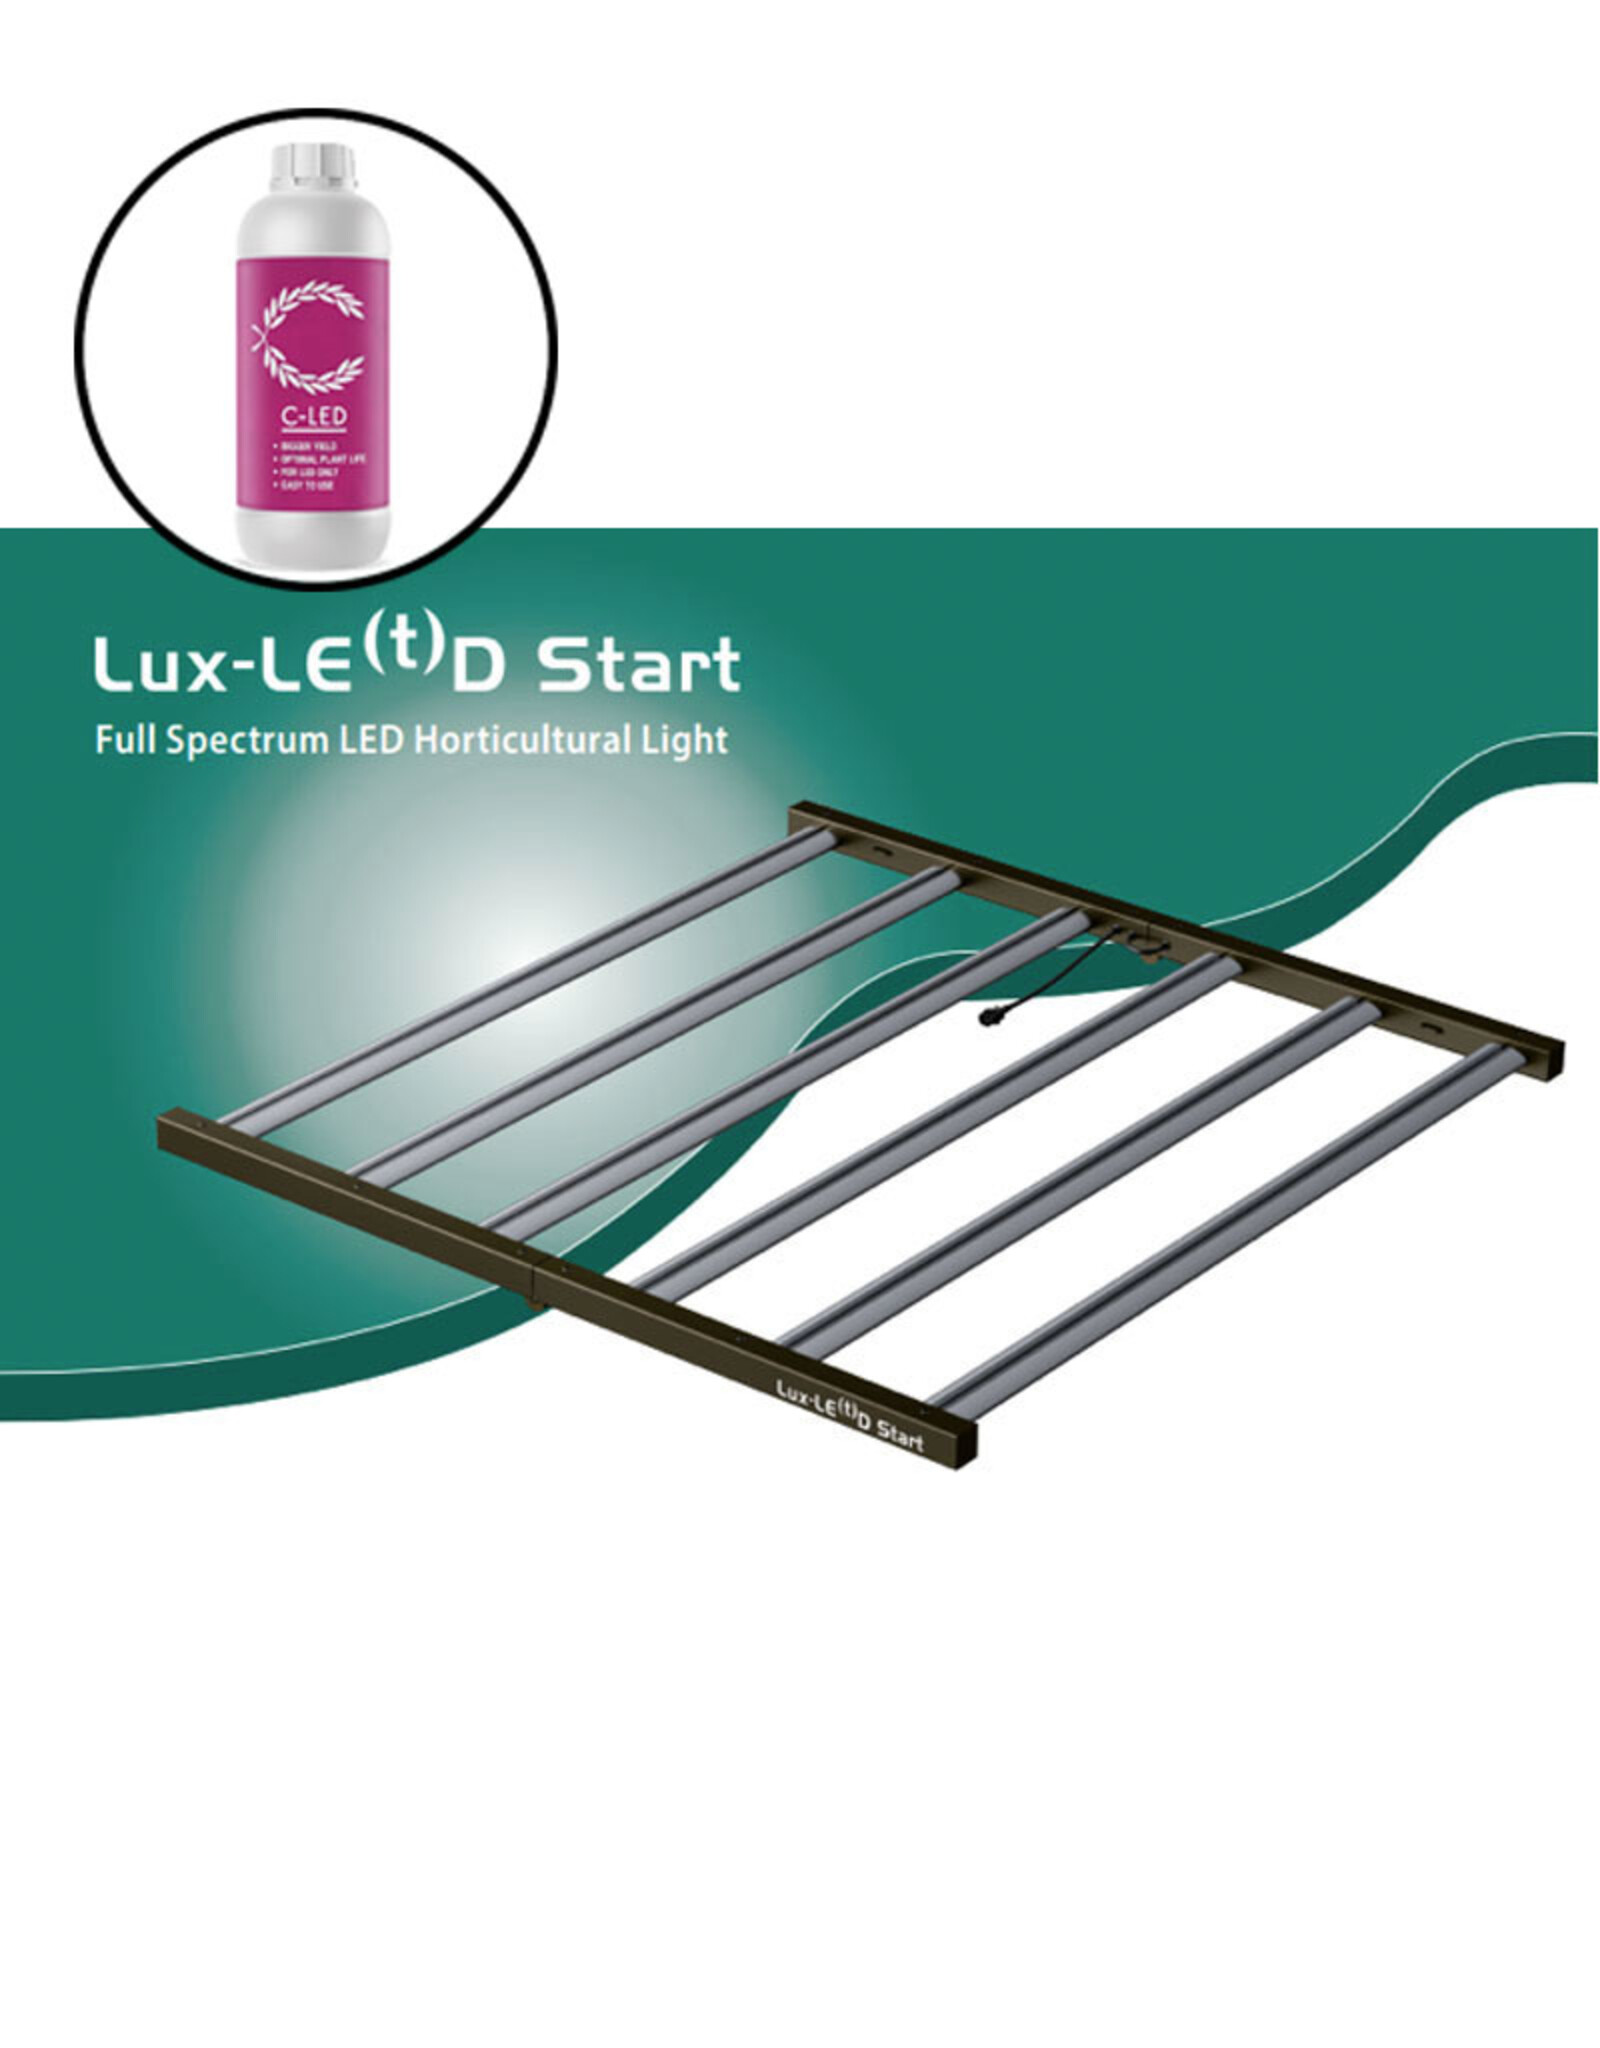 LUXE-LE(t)D LUXE-LE(T)D START 660W FULL SPECTRUM LED